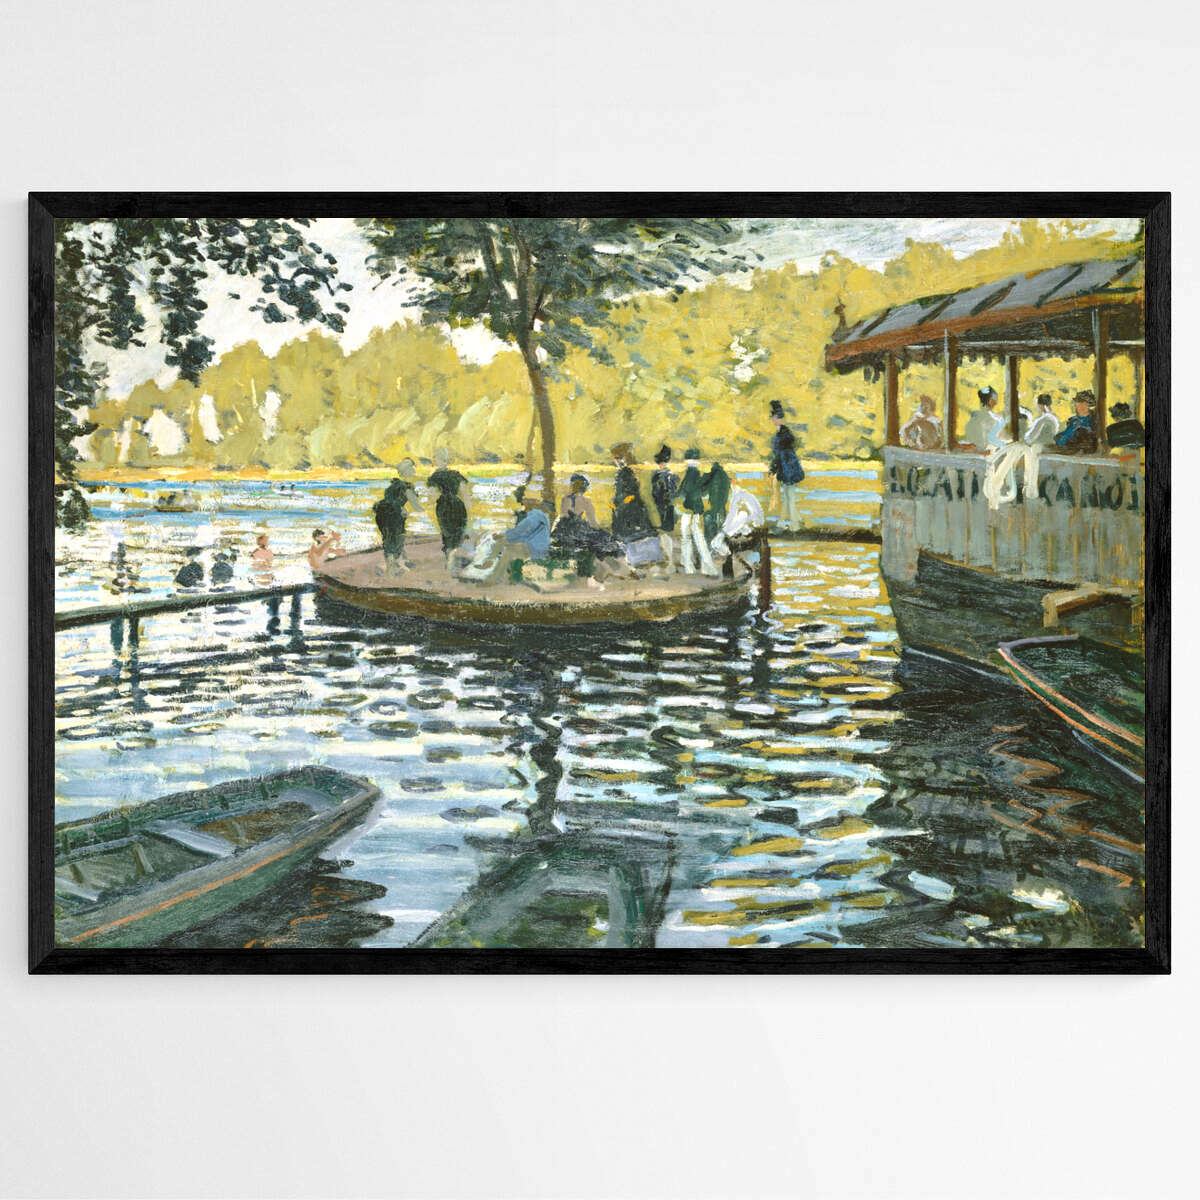 La Grenouillere by Claude Monet | Claude Monet Wall Art Prints - The Canvas Hive